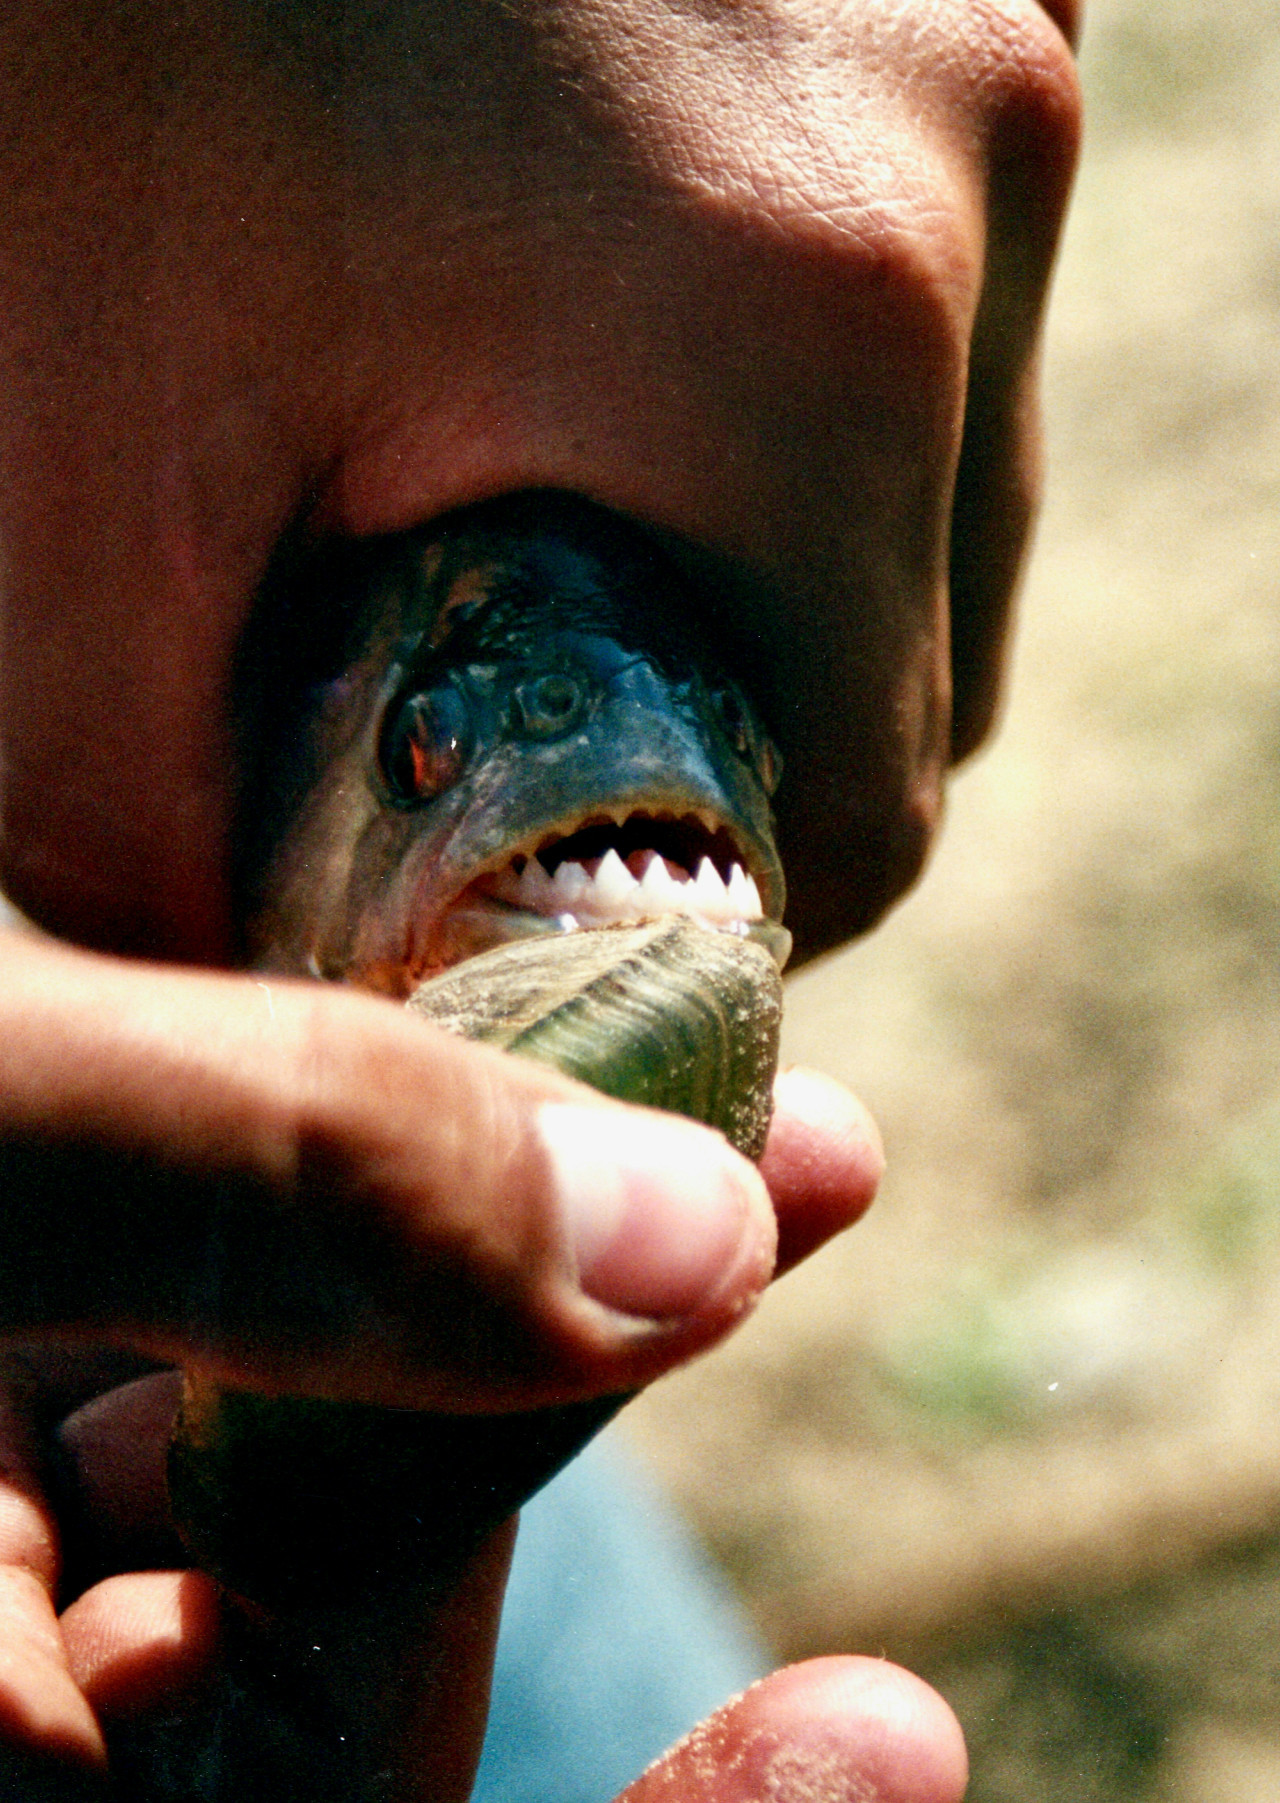 Las pirañas son conocidas por sus particulares dientes. Foto: Unsplash.